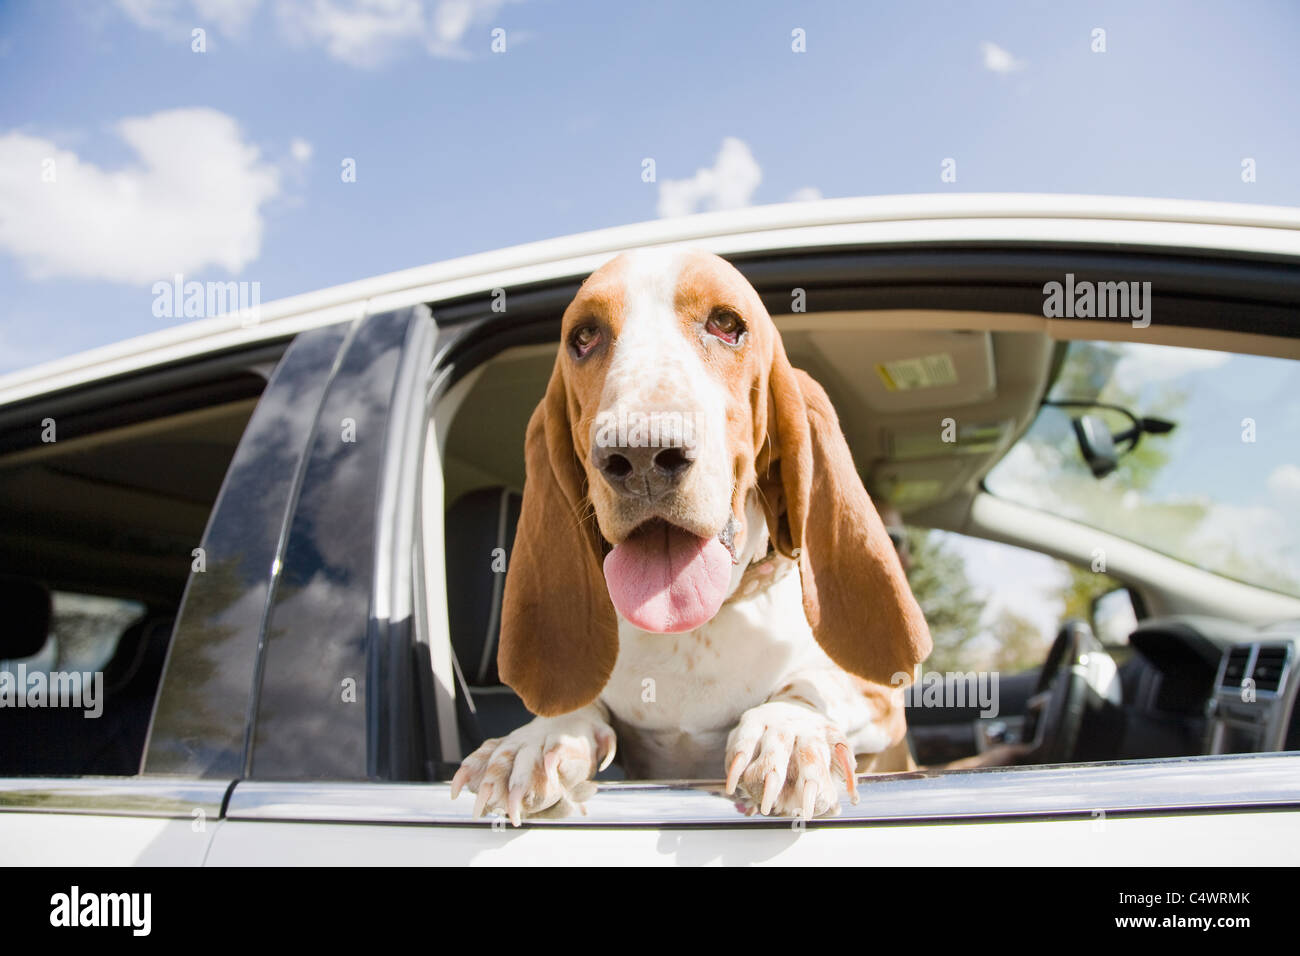 USA, Colorado, dog looking through car window Stock Photo